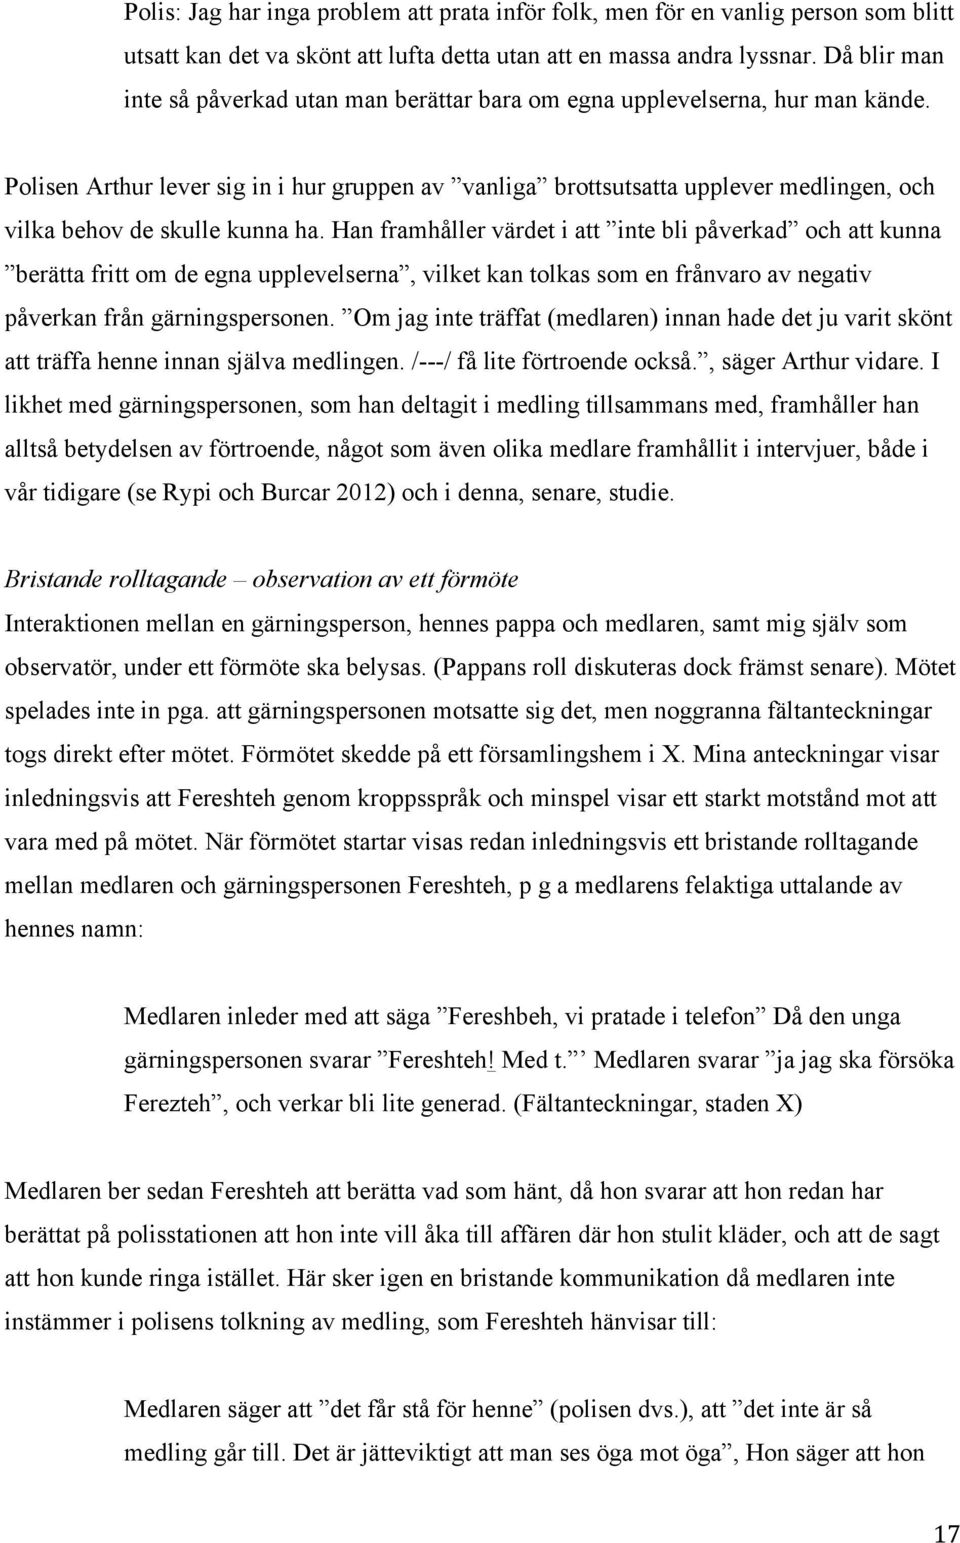 Forskningsrapport till Allmänna barnhuset (2015) Medling vid brott ...